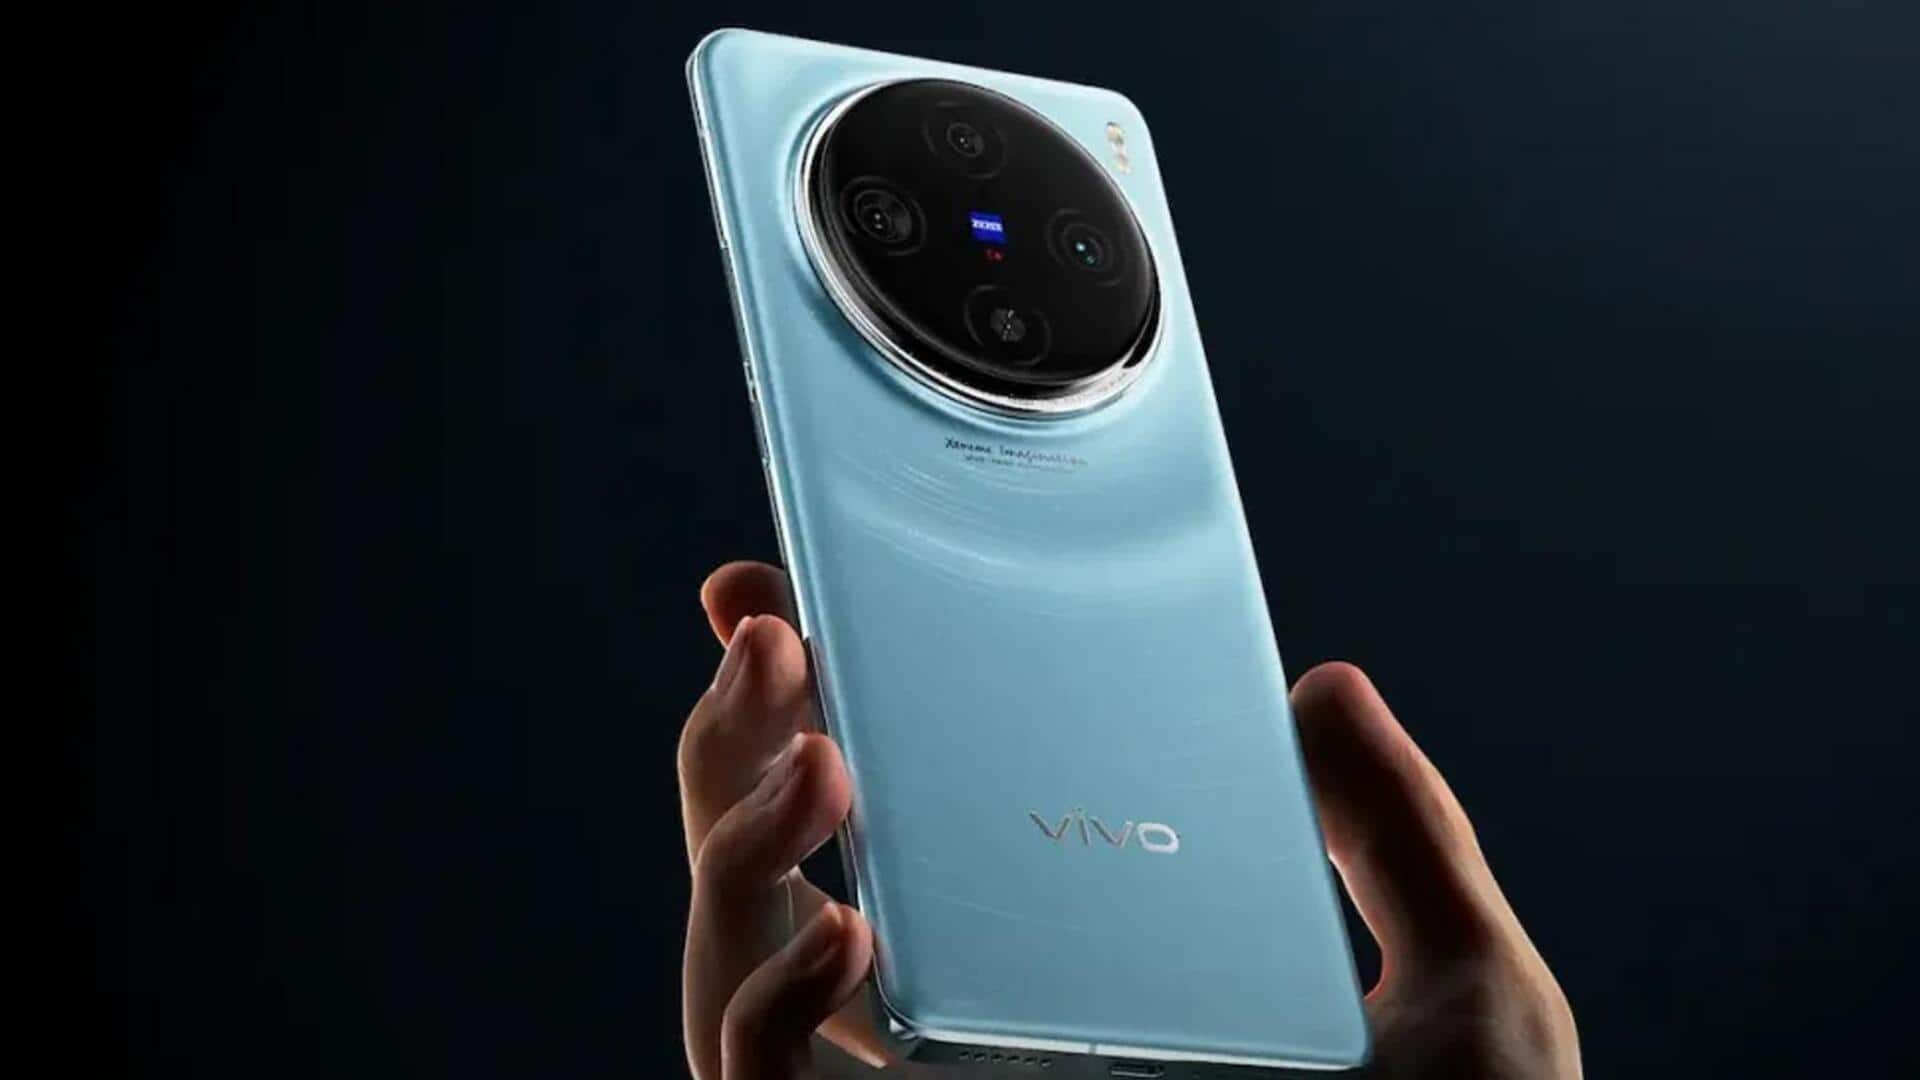 वीवो X100 प्रो+ में मिलेगा सोनी 50MP LYT-900 कैमरा, अगले साल होगा लॉन्च